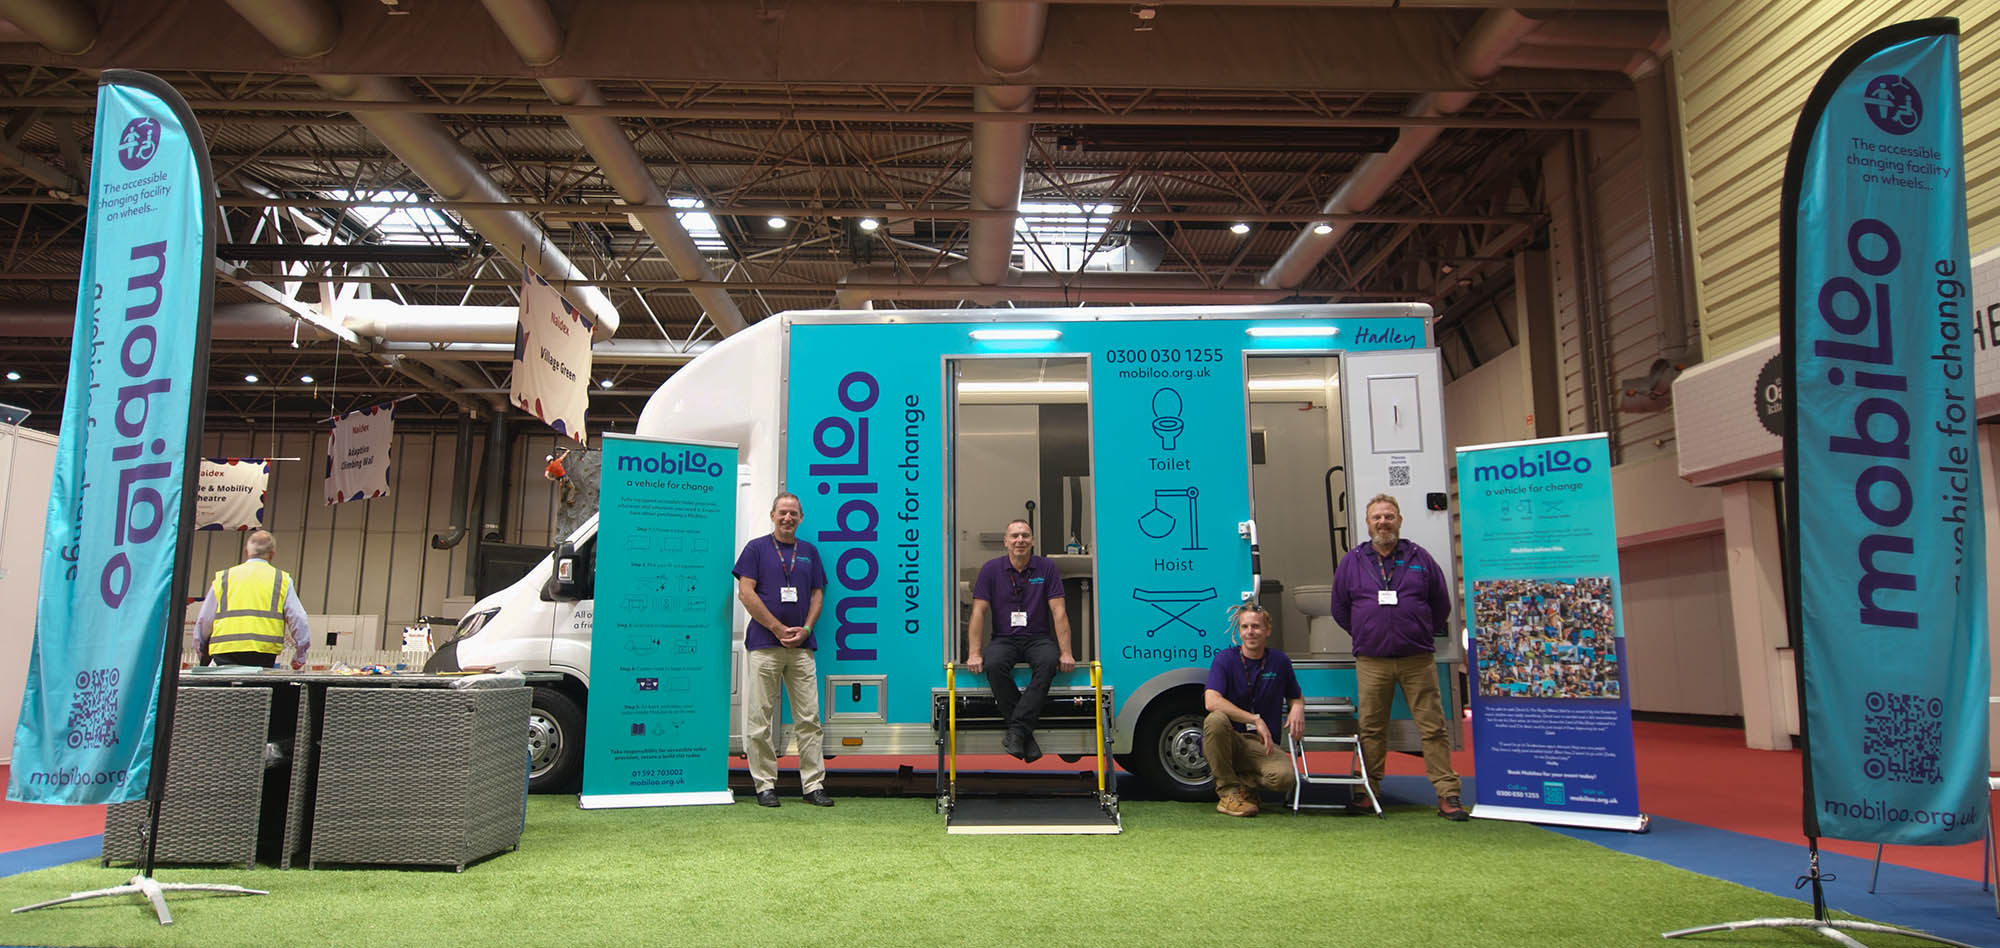 Mobiloo team posing in front of Mobiloo van at exhibition